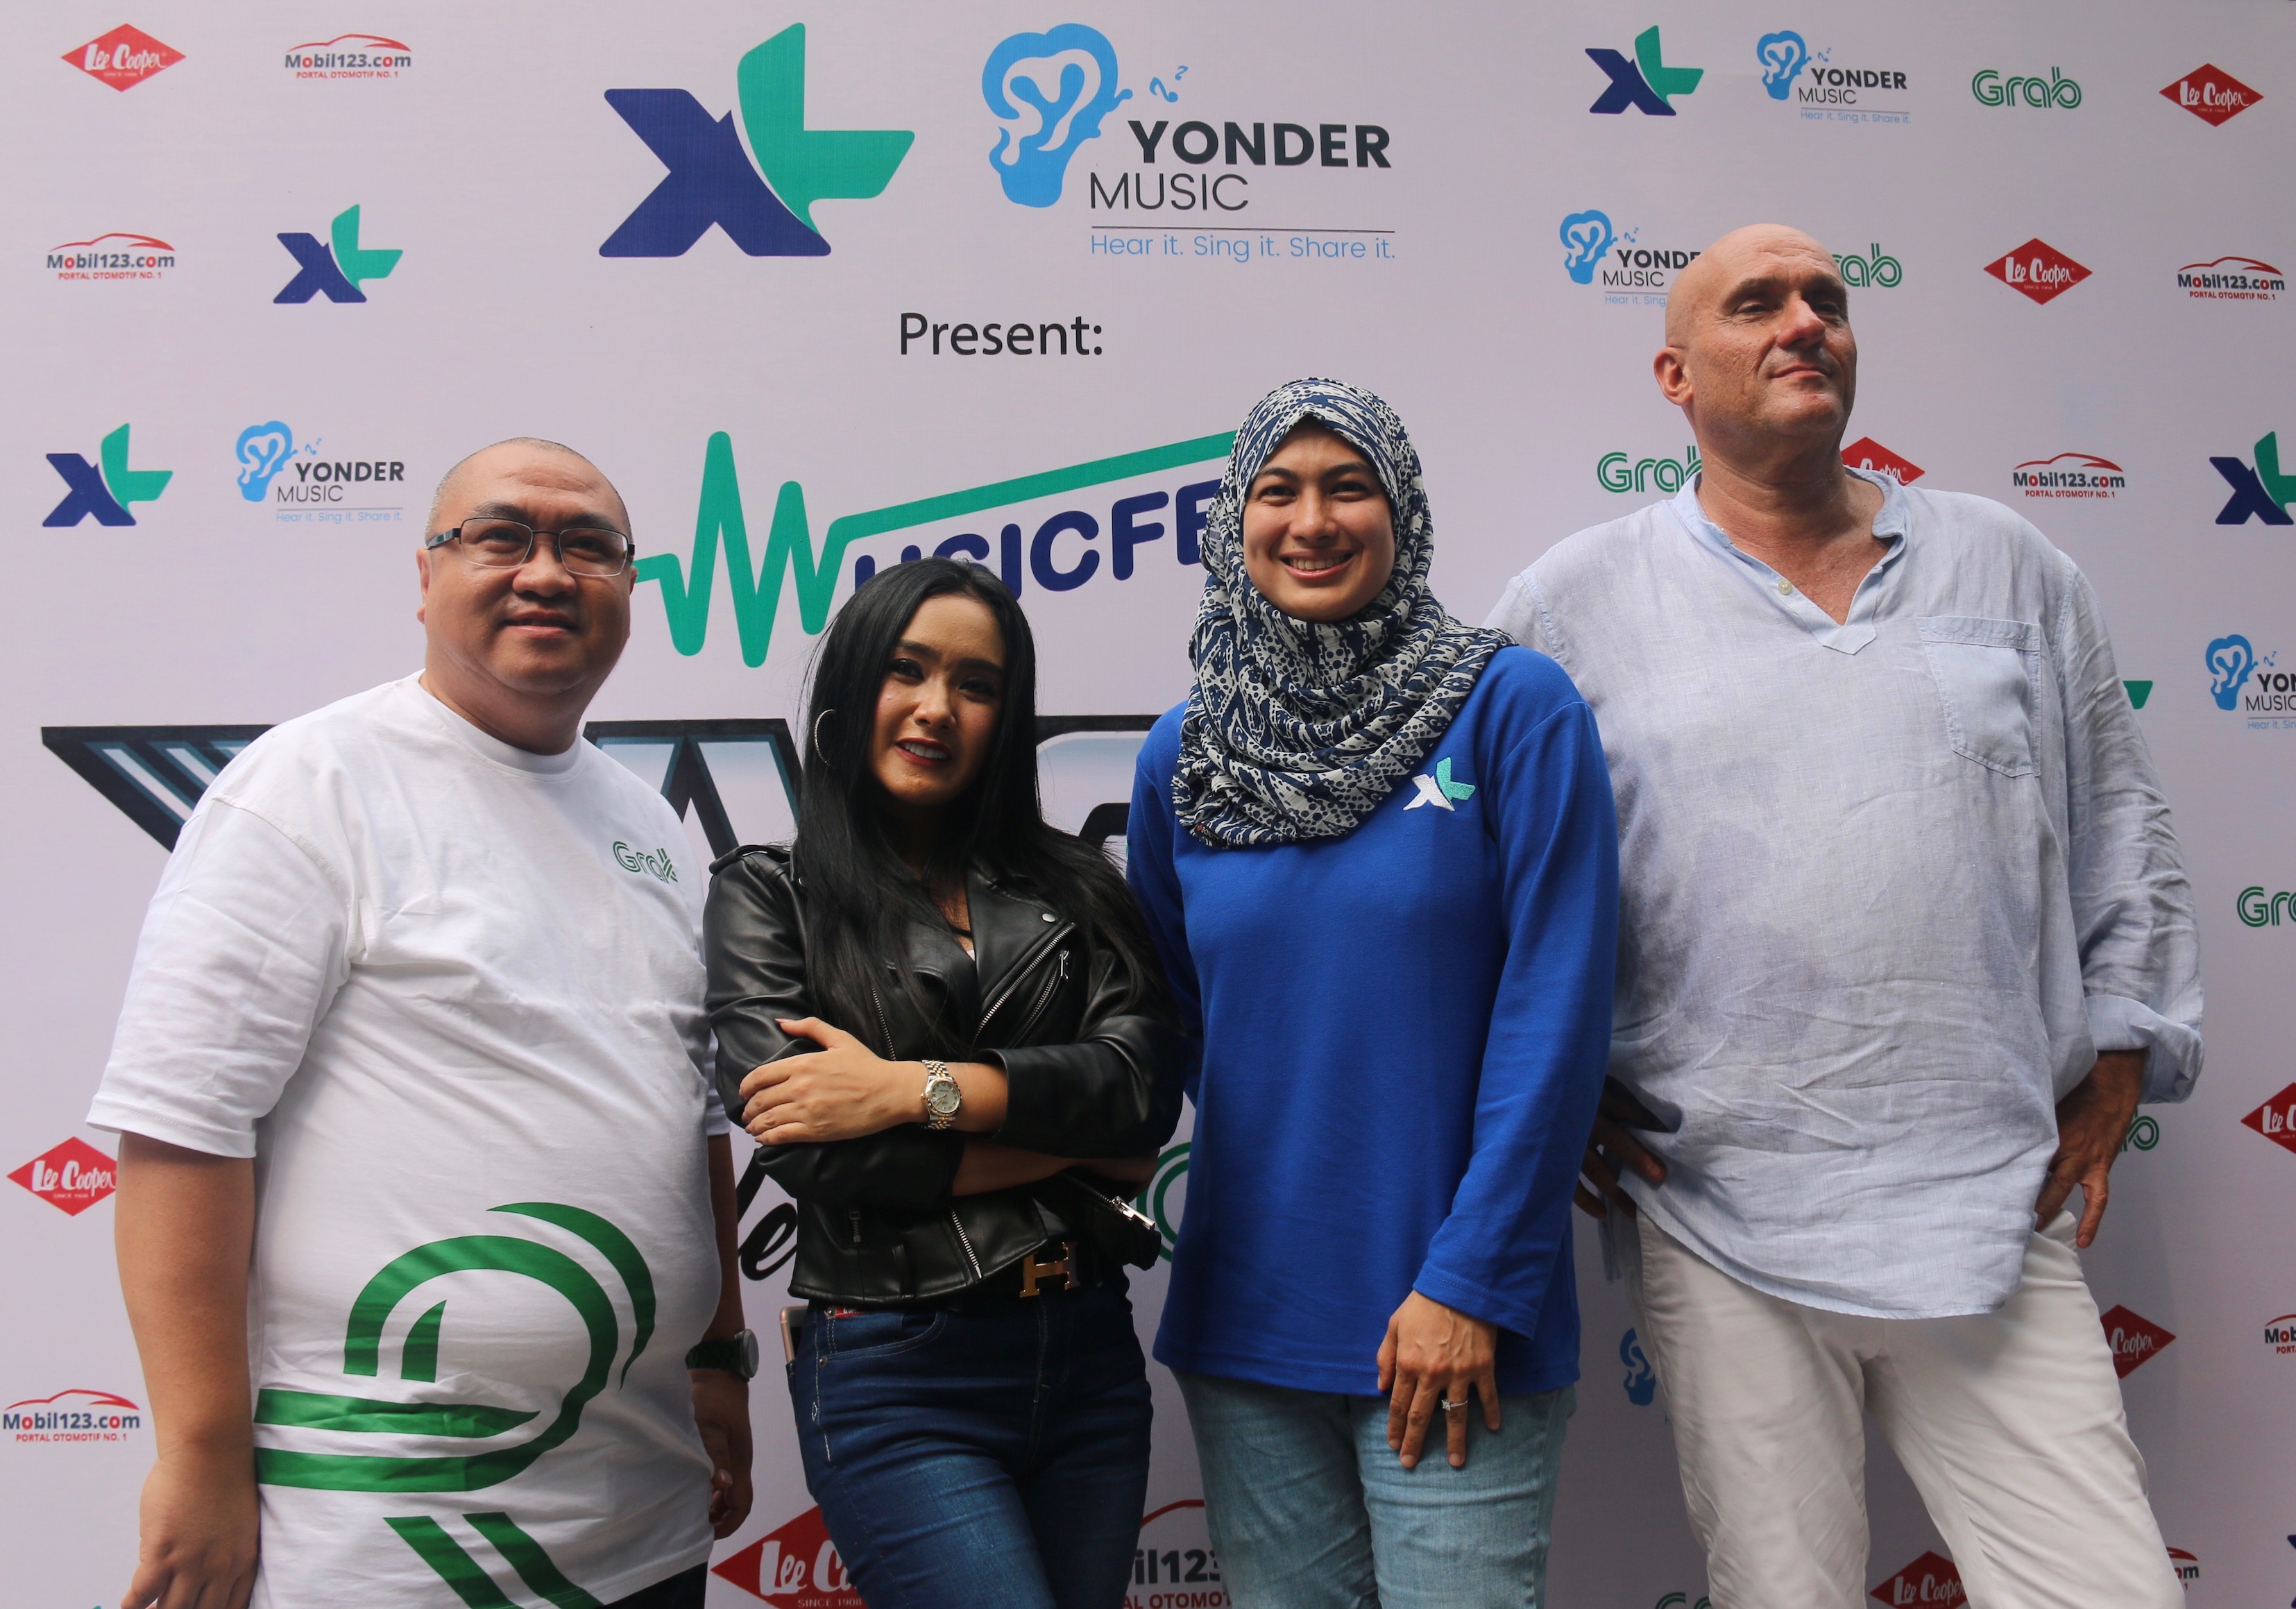 Yonder Music Dukung Musisi Indonesia Go International Peluncuran Single Terbaru Cita Citata “NYCita” Libatkan Ratusan Bikers